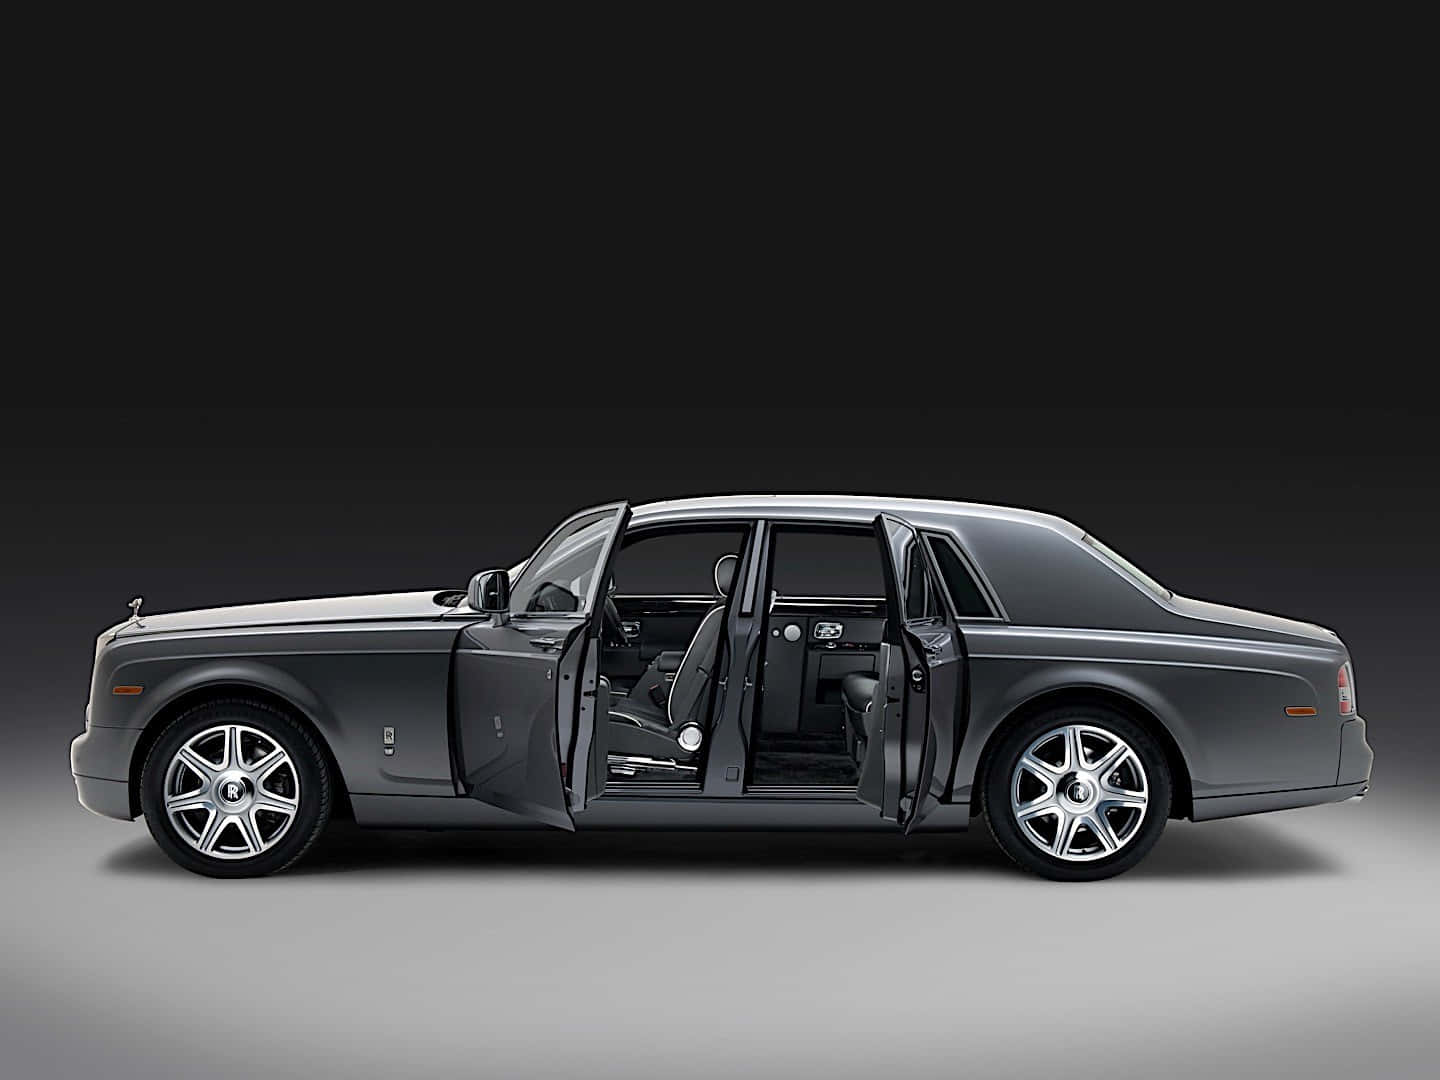 Exquisite Luxury - Rolls Royce Phantom Wallpaper